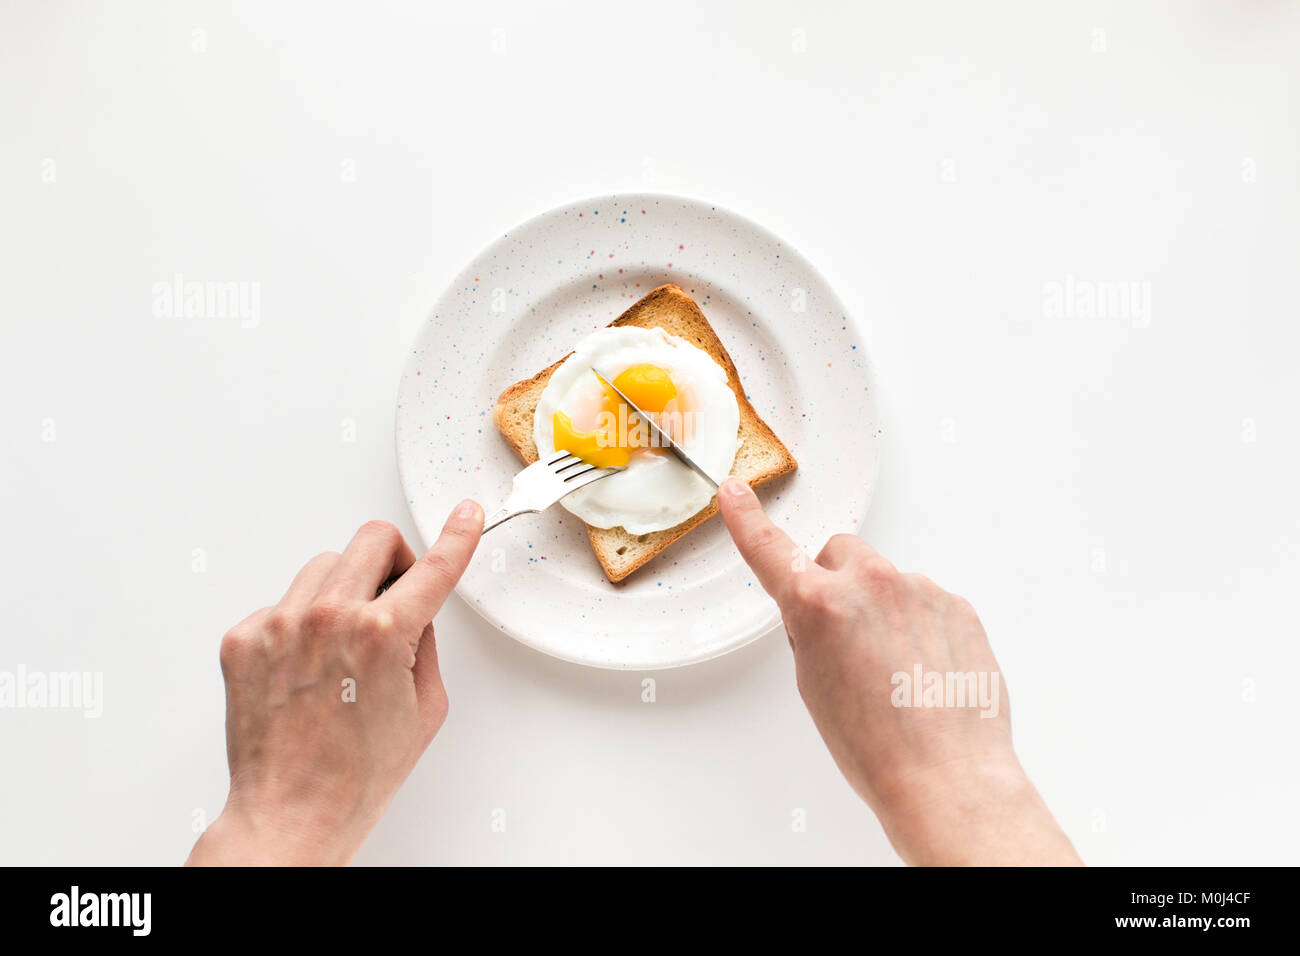 Desayuno con huevo frito en pan tostado Foto de stock